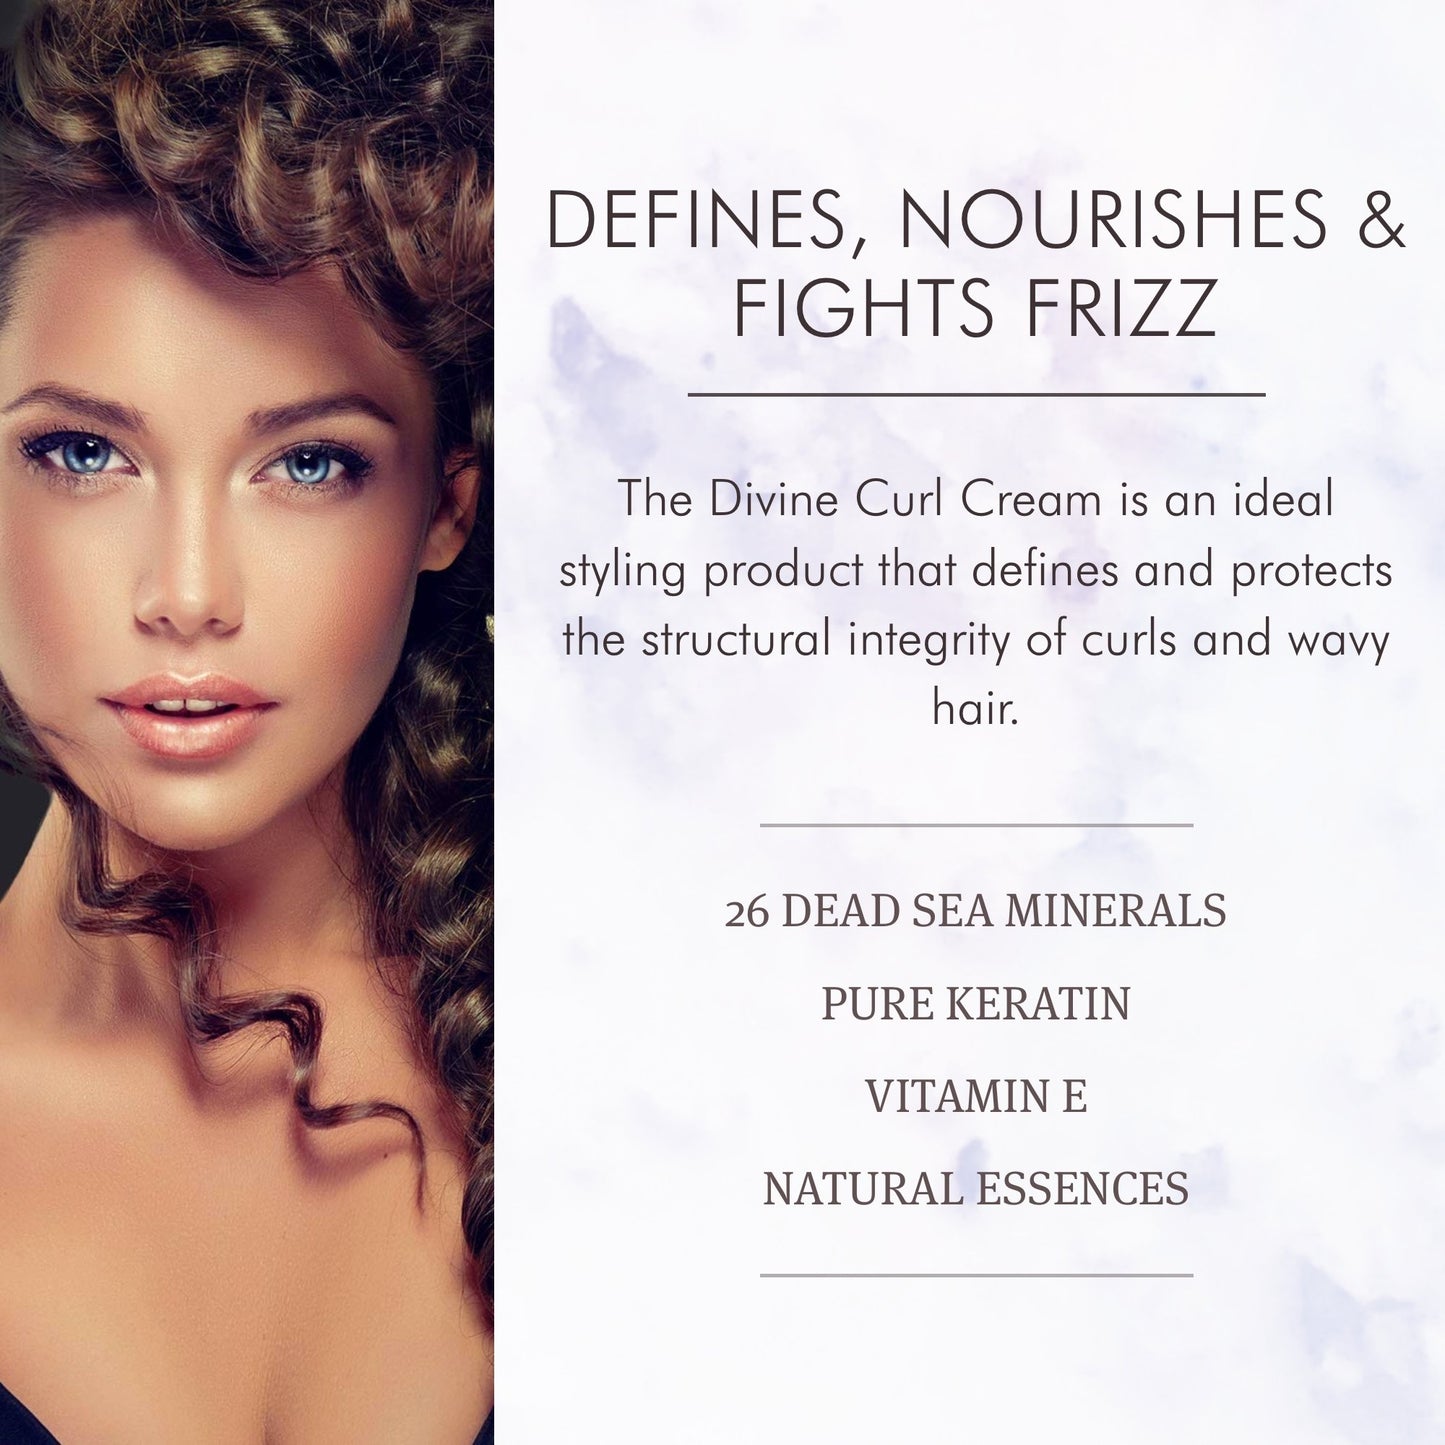 Saphira Divine Curls Cream Defines, Nourishes and Fights Frizz, with 26 Dead Sea Minerals, Pure Keratin, Vitamin E and Natural Essences.